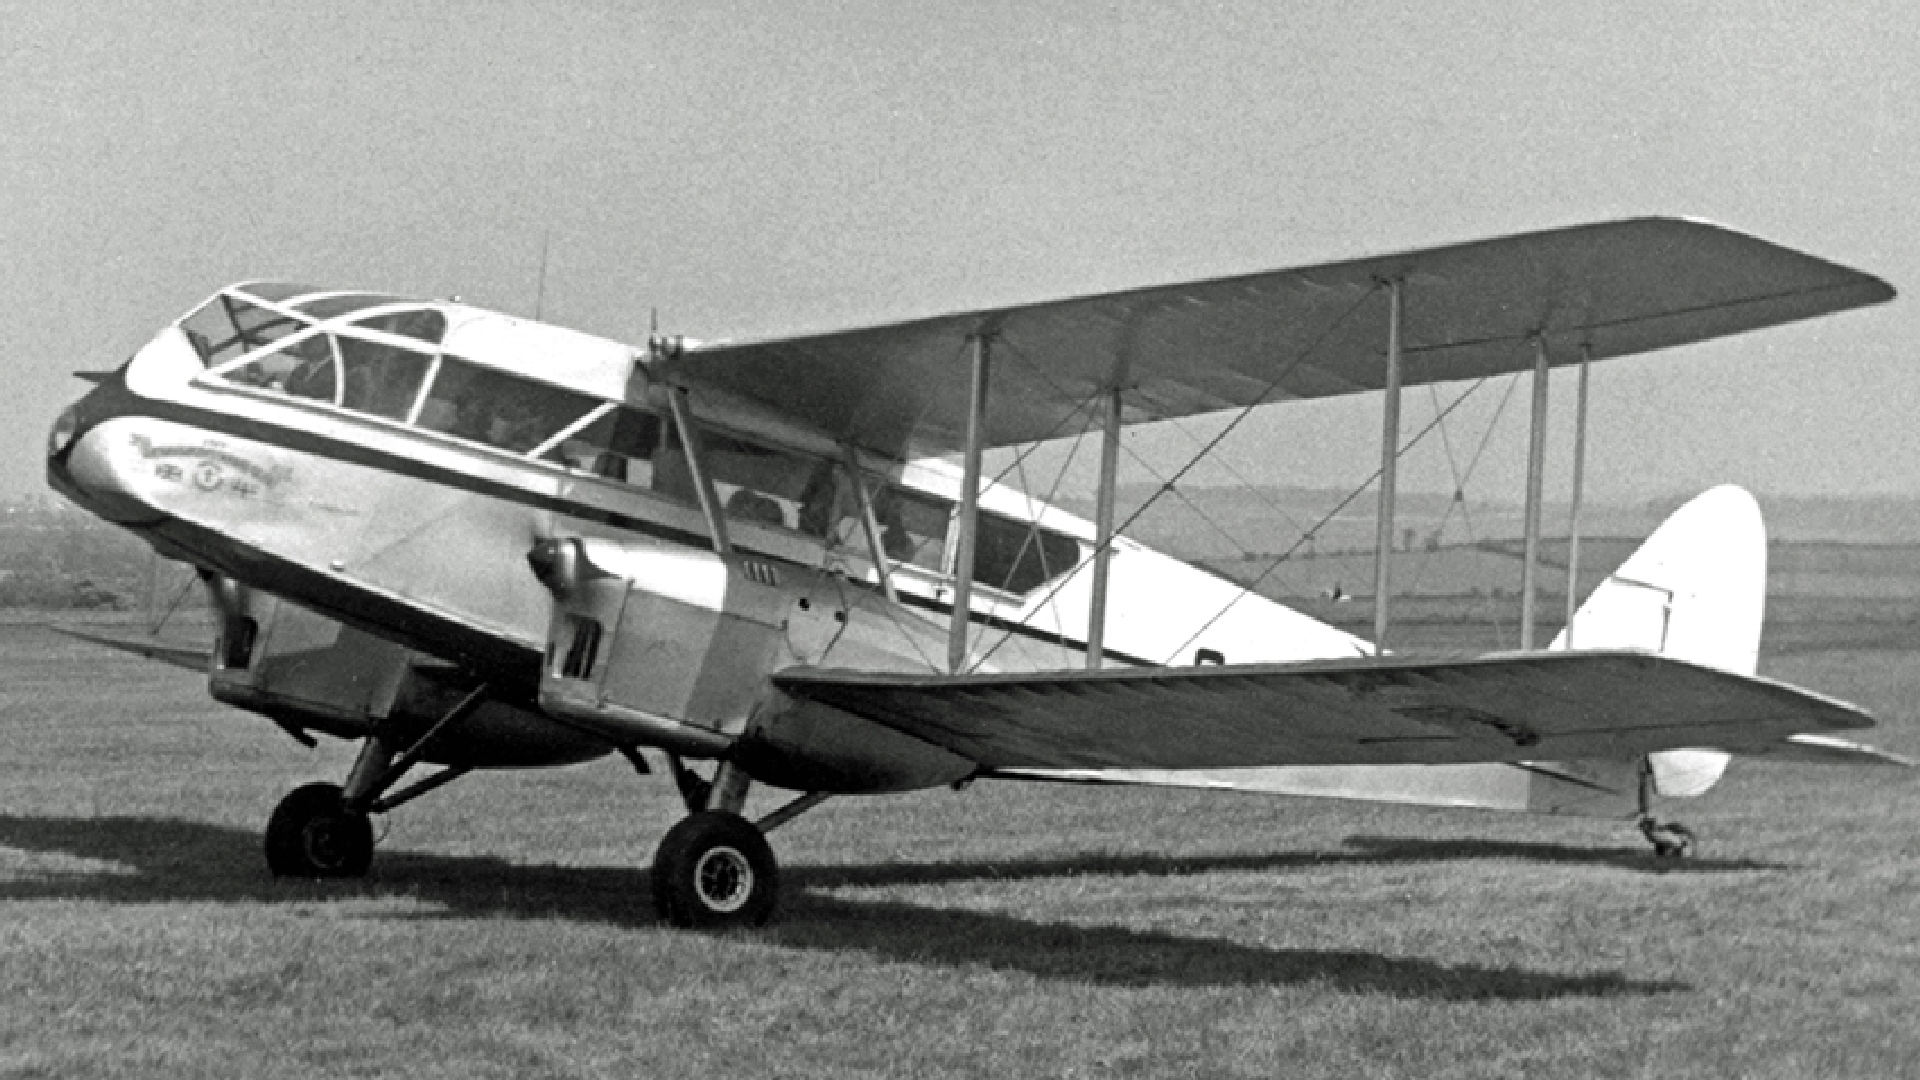 The De Havilland Dragon at Saumur Air Club